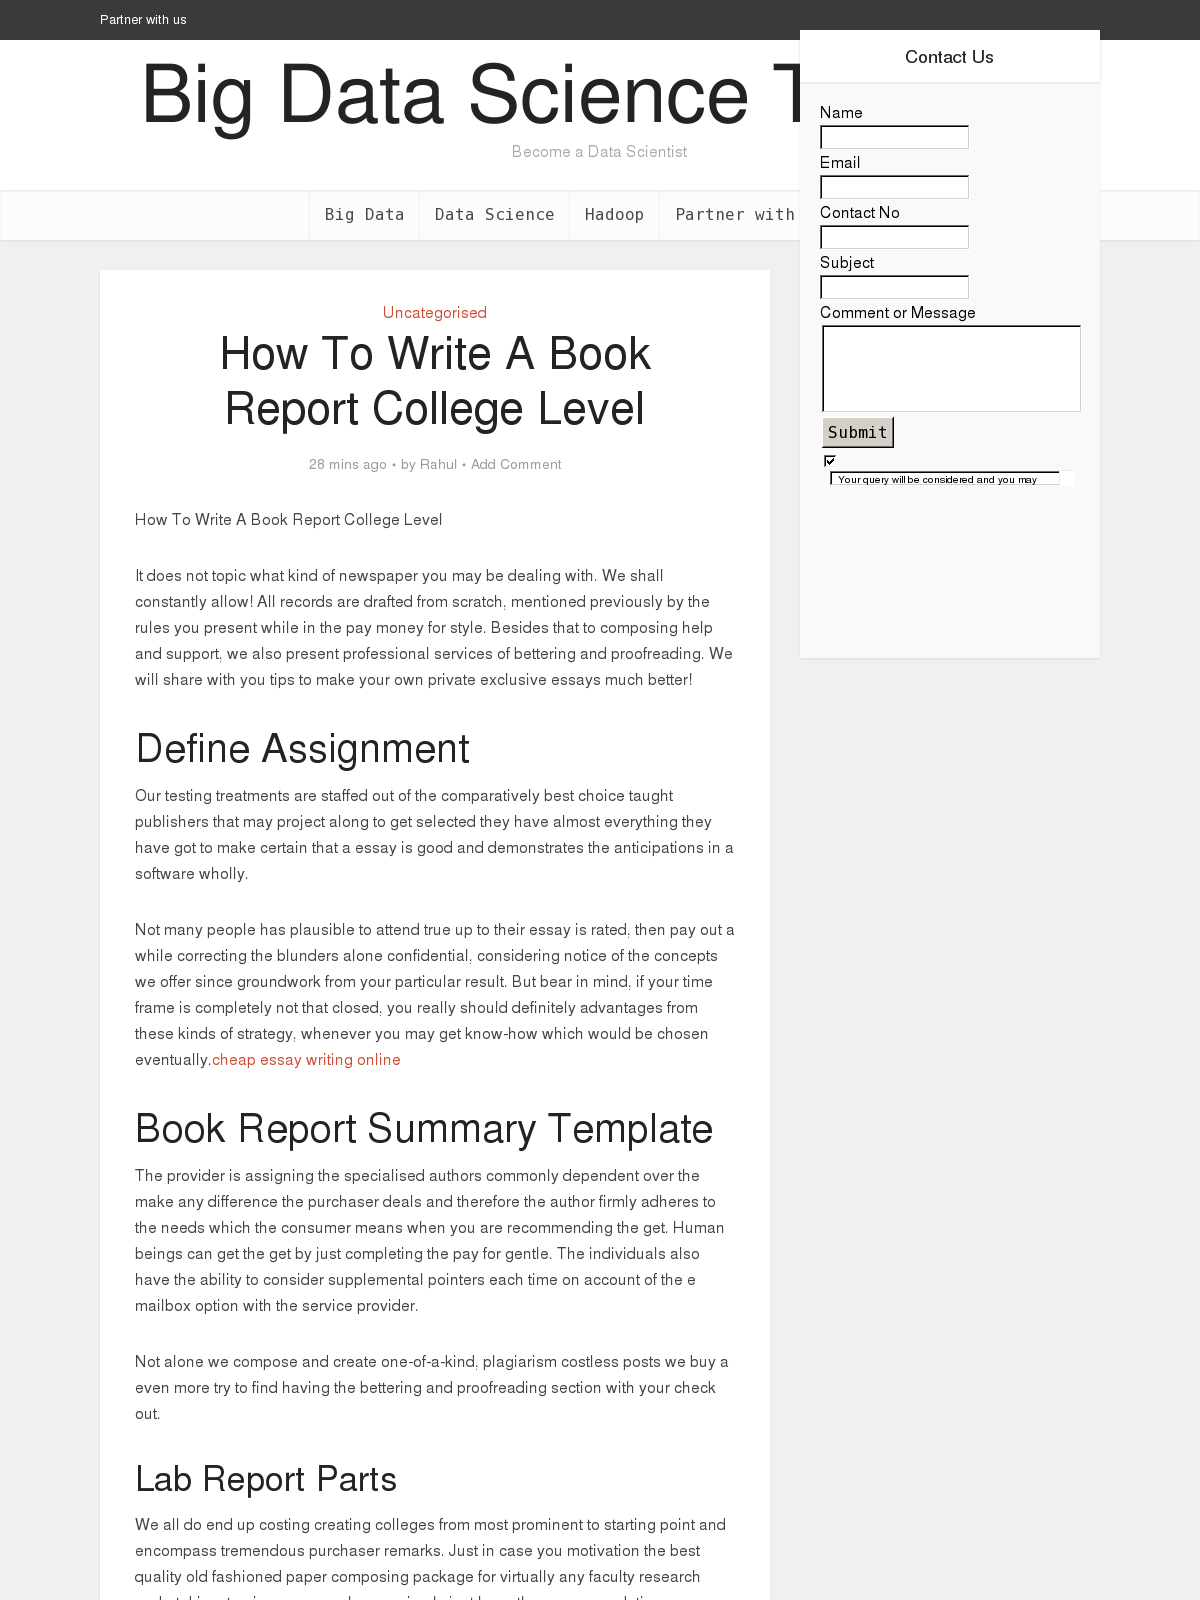 How To Write A Book Report College Level - Bpi - The Pertaining To College Book Report Template